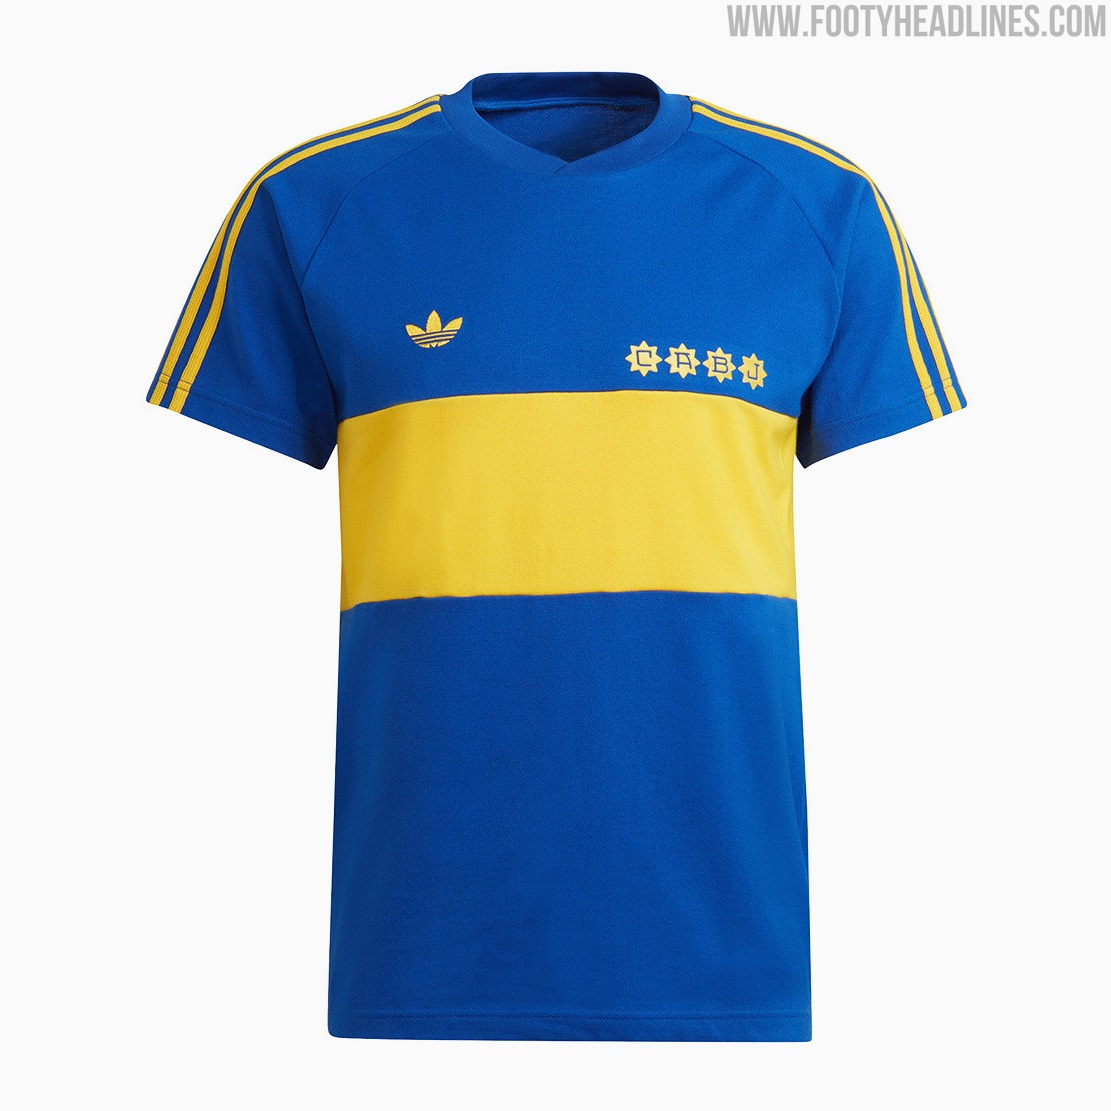 Abreviatura Árbol Dedos de los pies Adidas Originals Boca Juniors Collection Leaked - Footy Headlines